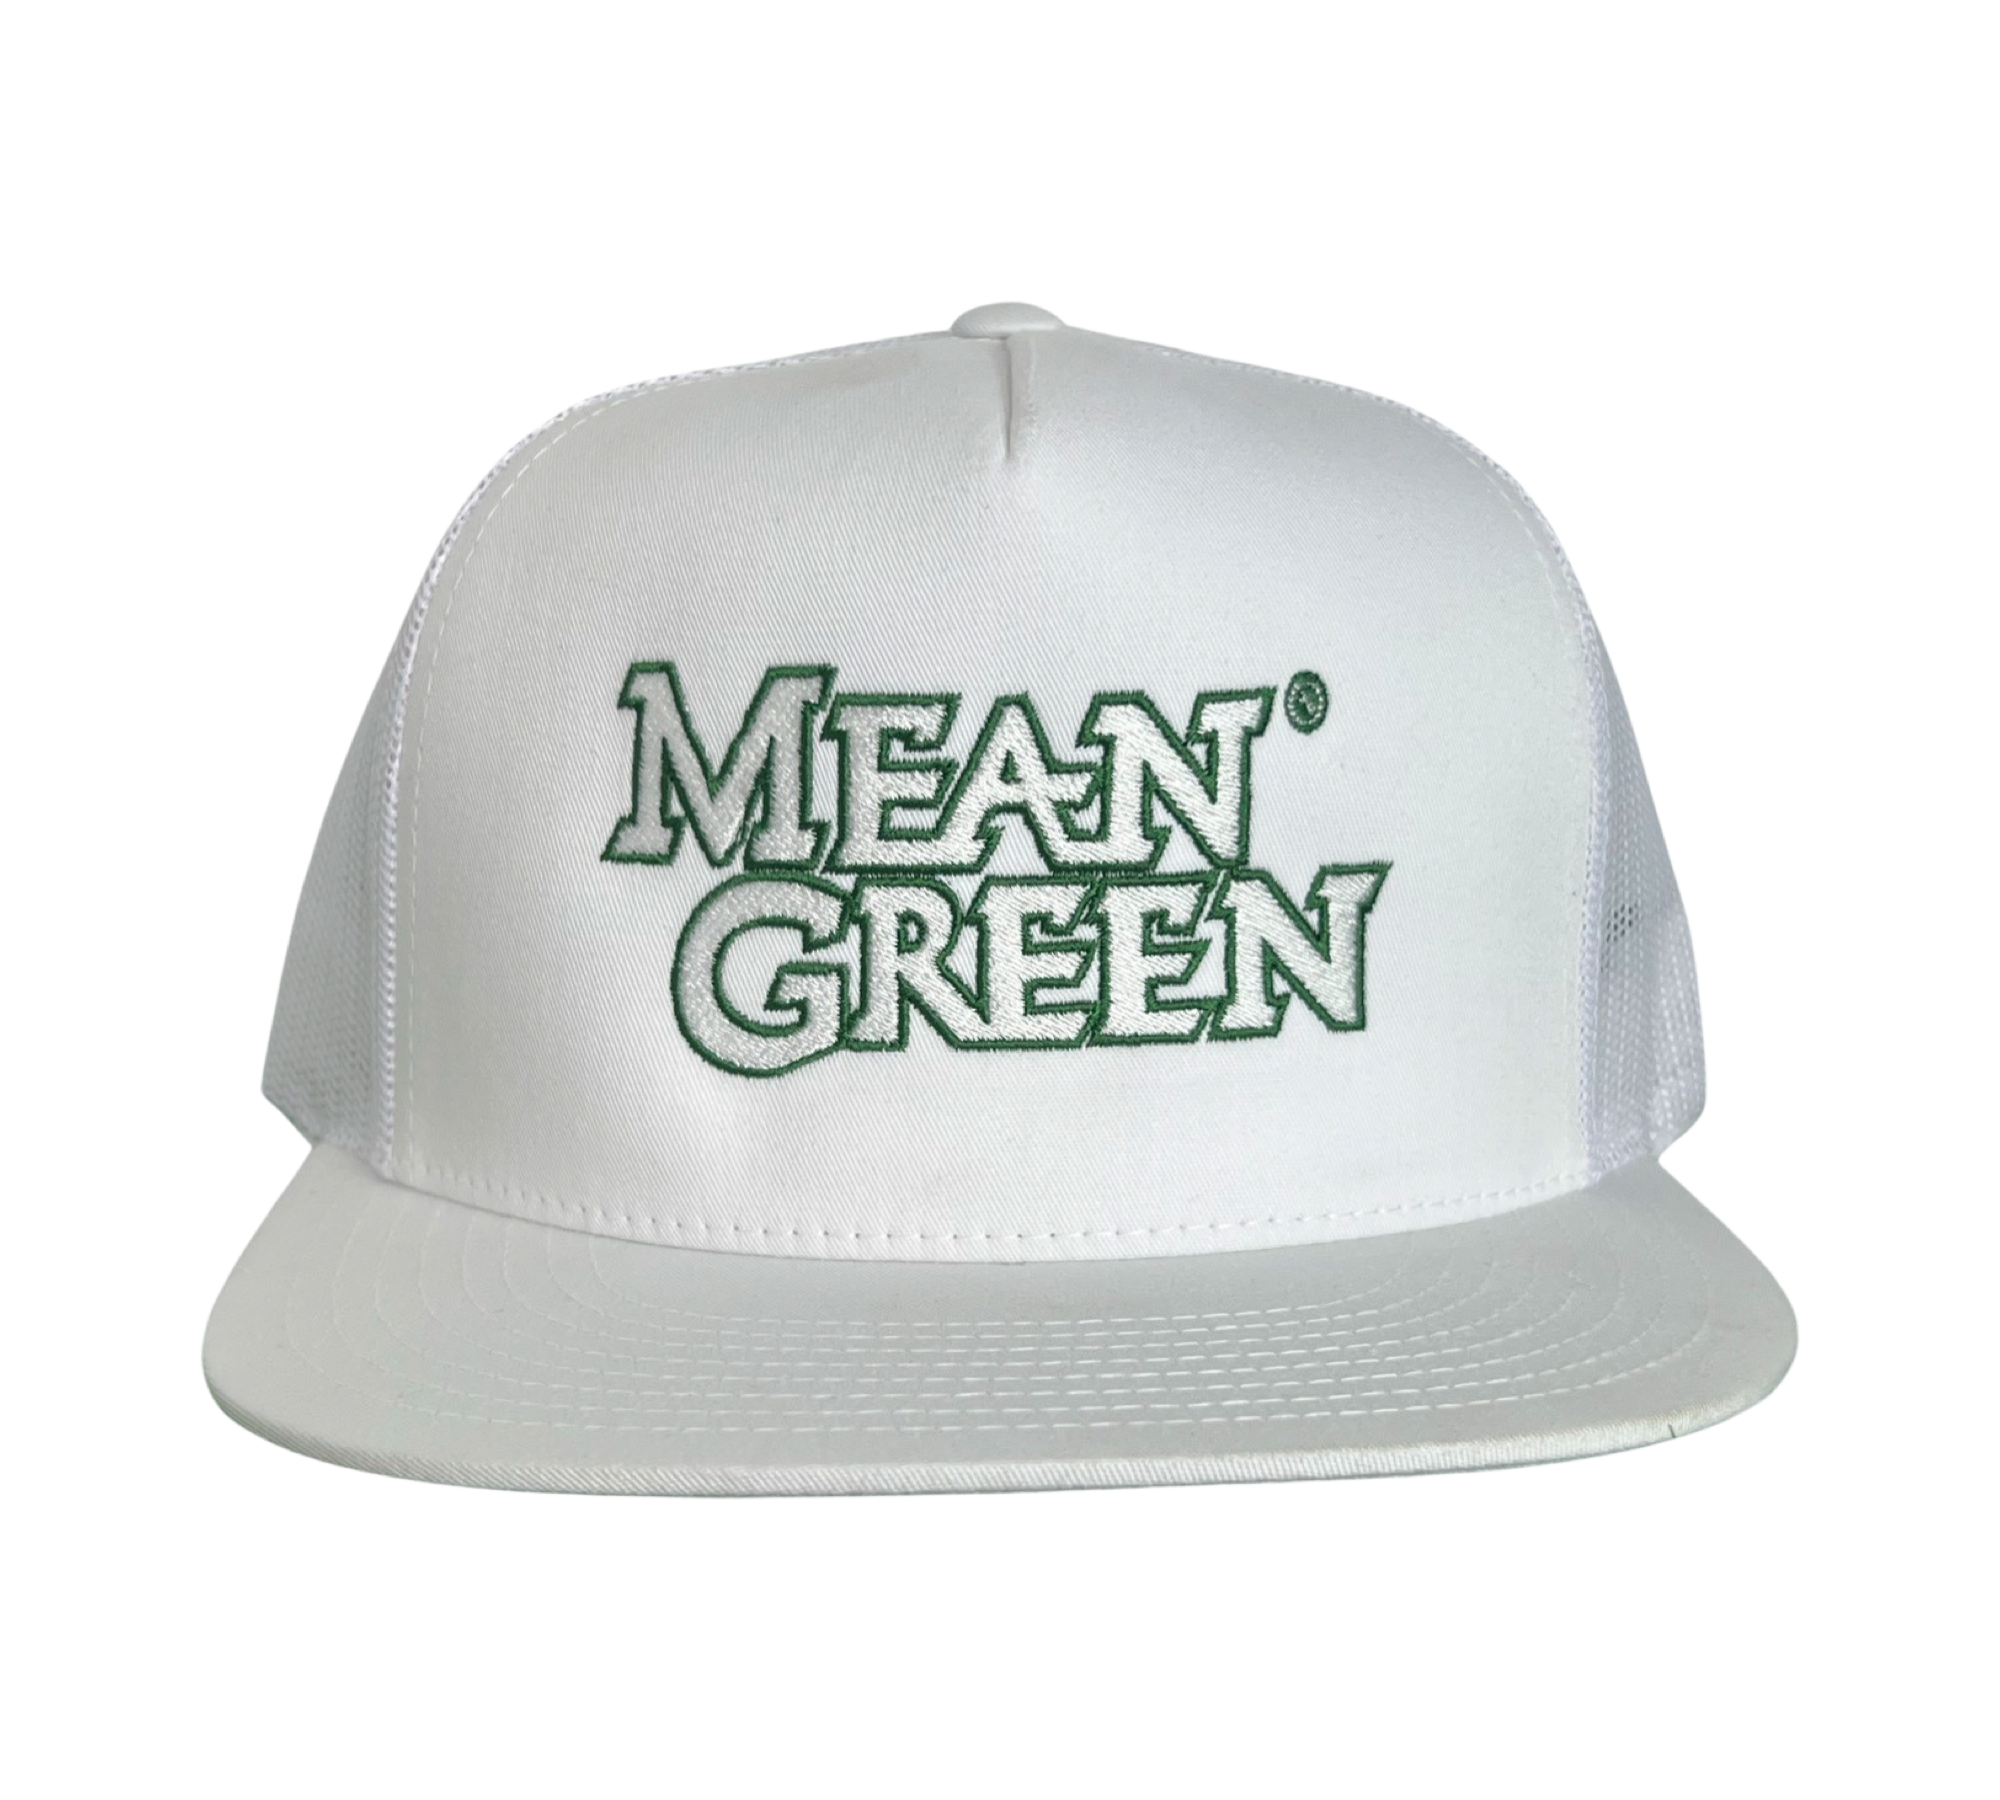 Mean Green basketball cap